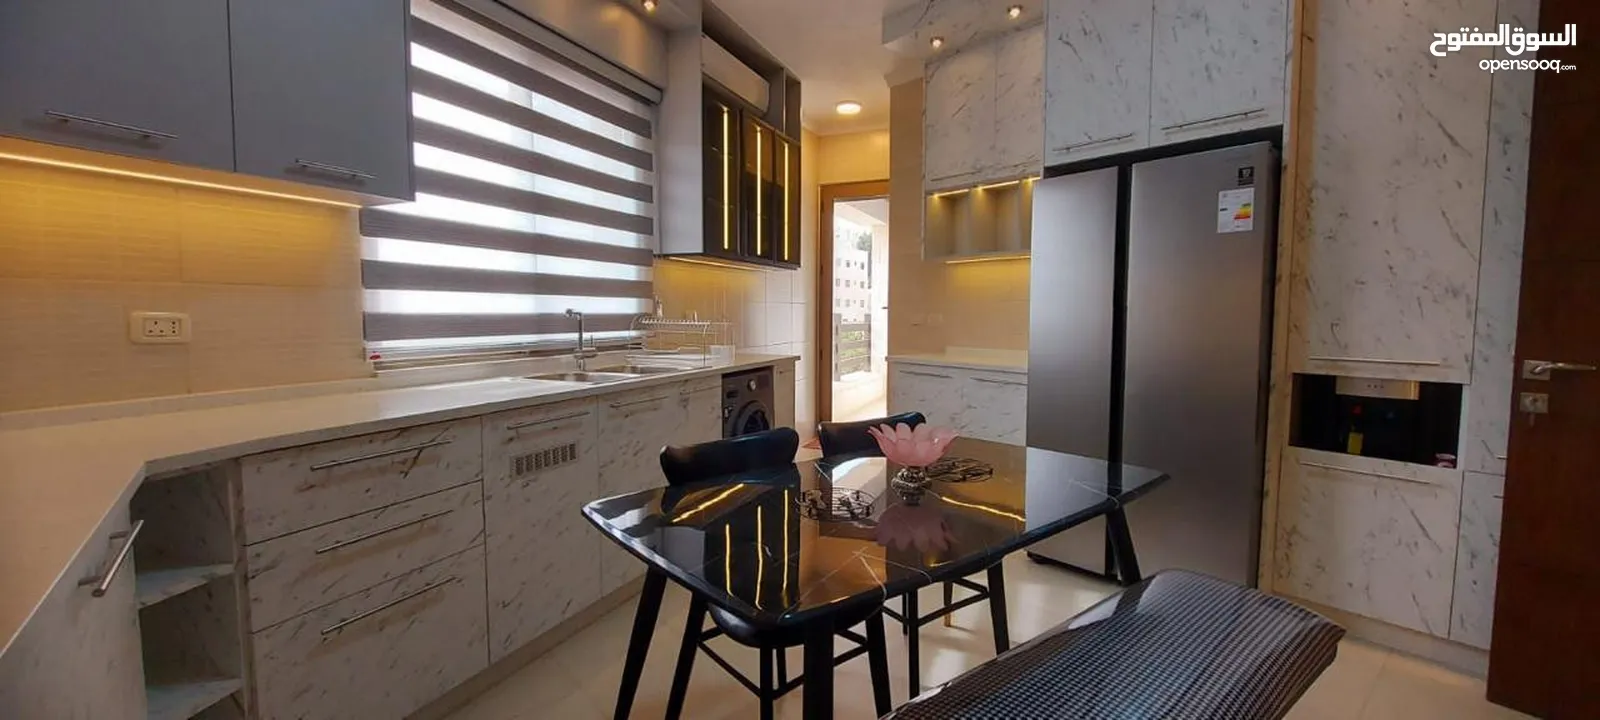 شقة مفروشة فاخرة في - دير غبار - مساحة 200 متر ثلاث غرف نوم بفرش مودرن (6636)